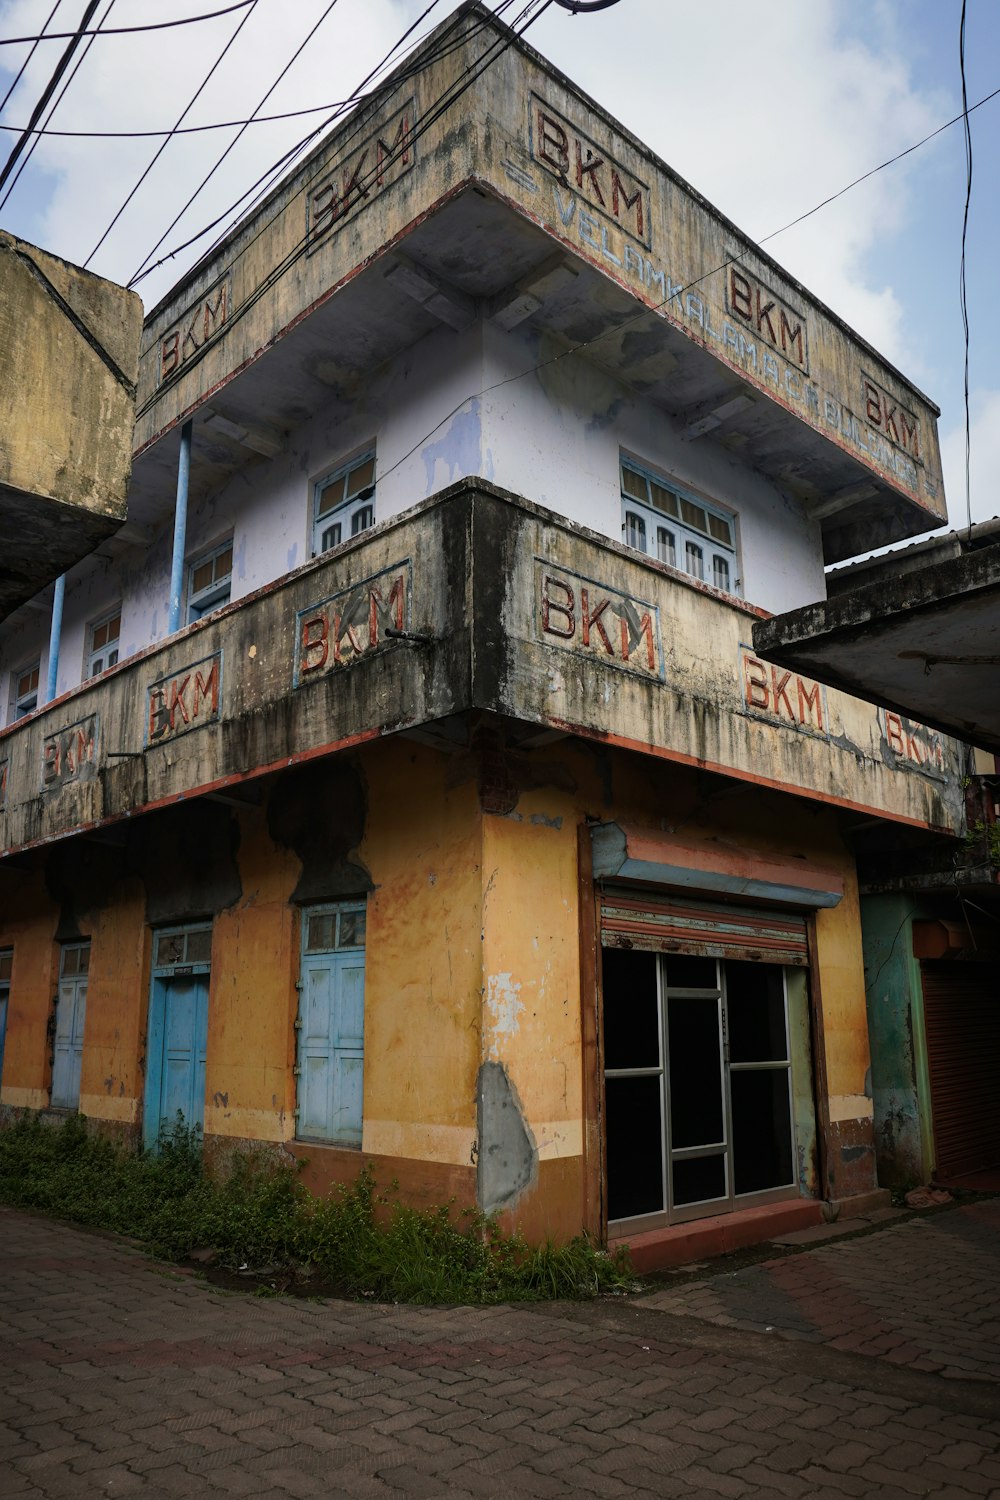 un vieux bâtiment délabré avec des graffitis dessus